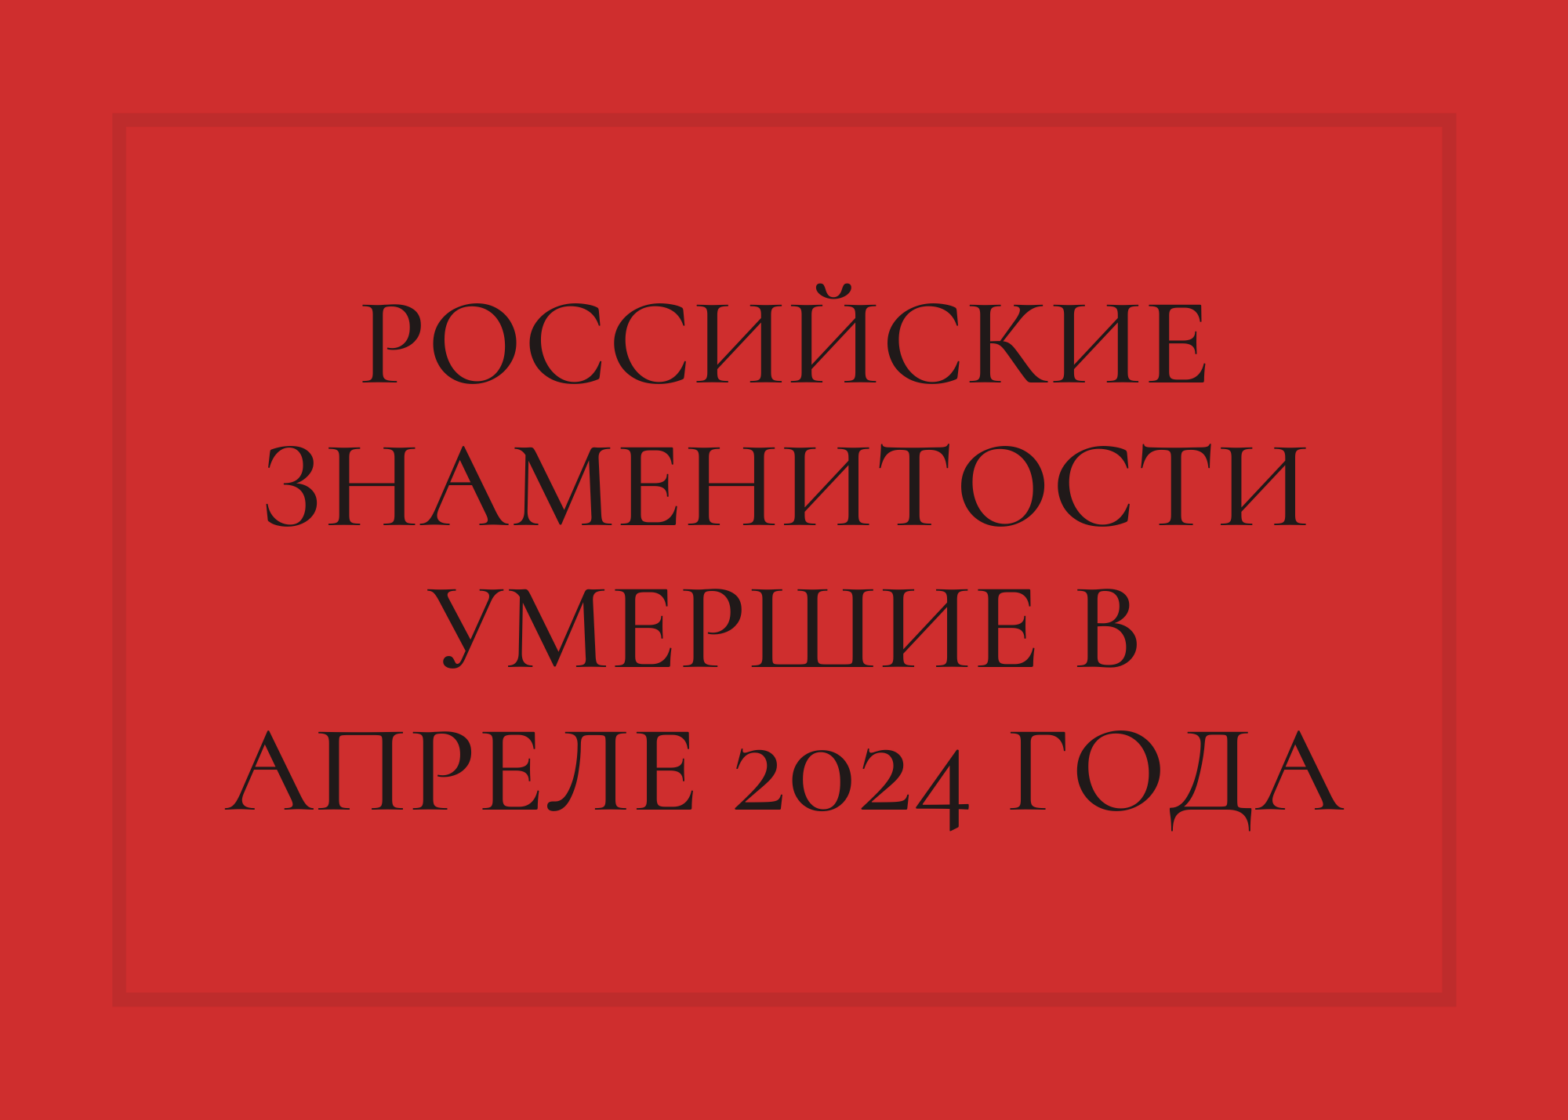 Российские знаменитости умершие в апреле 2024 года